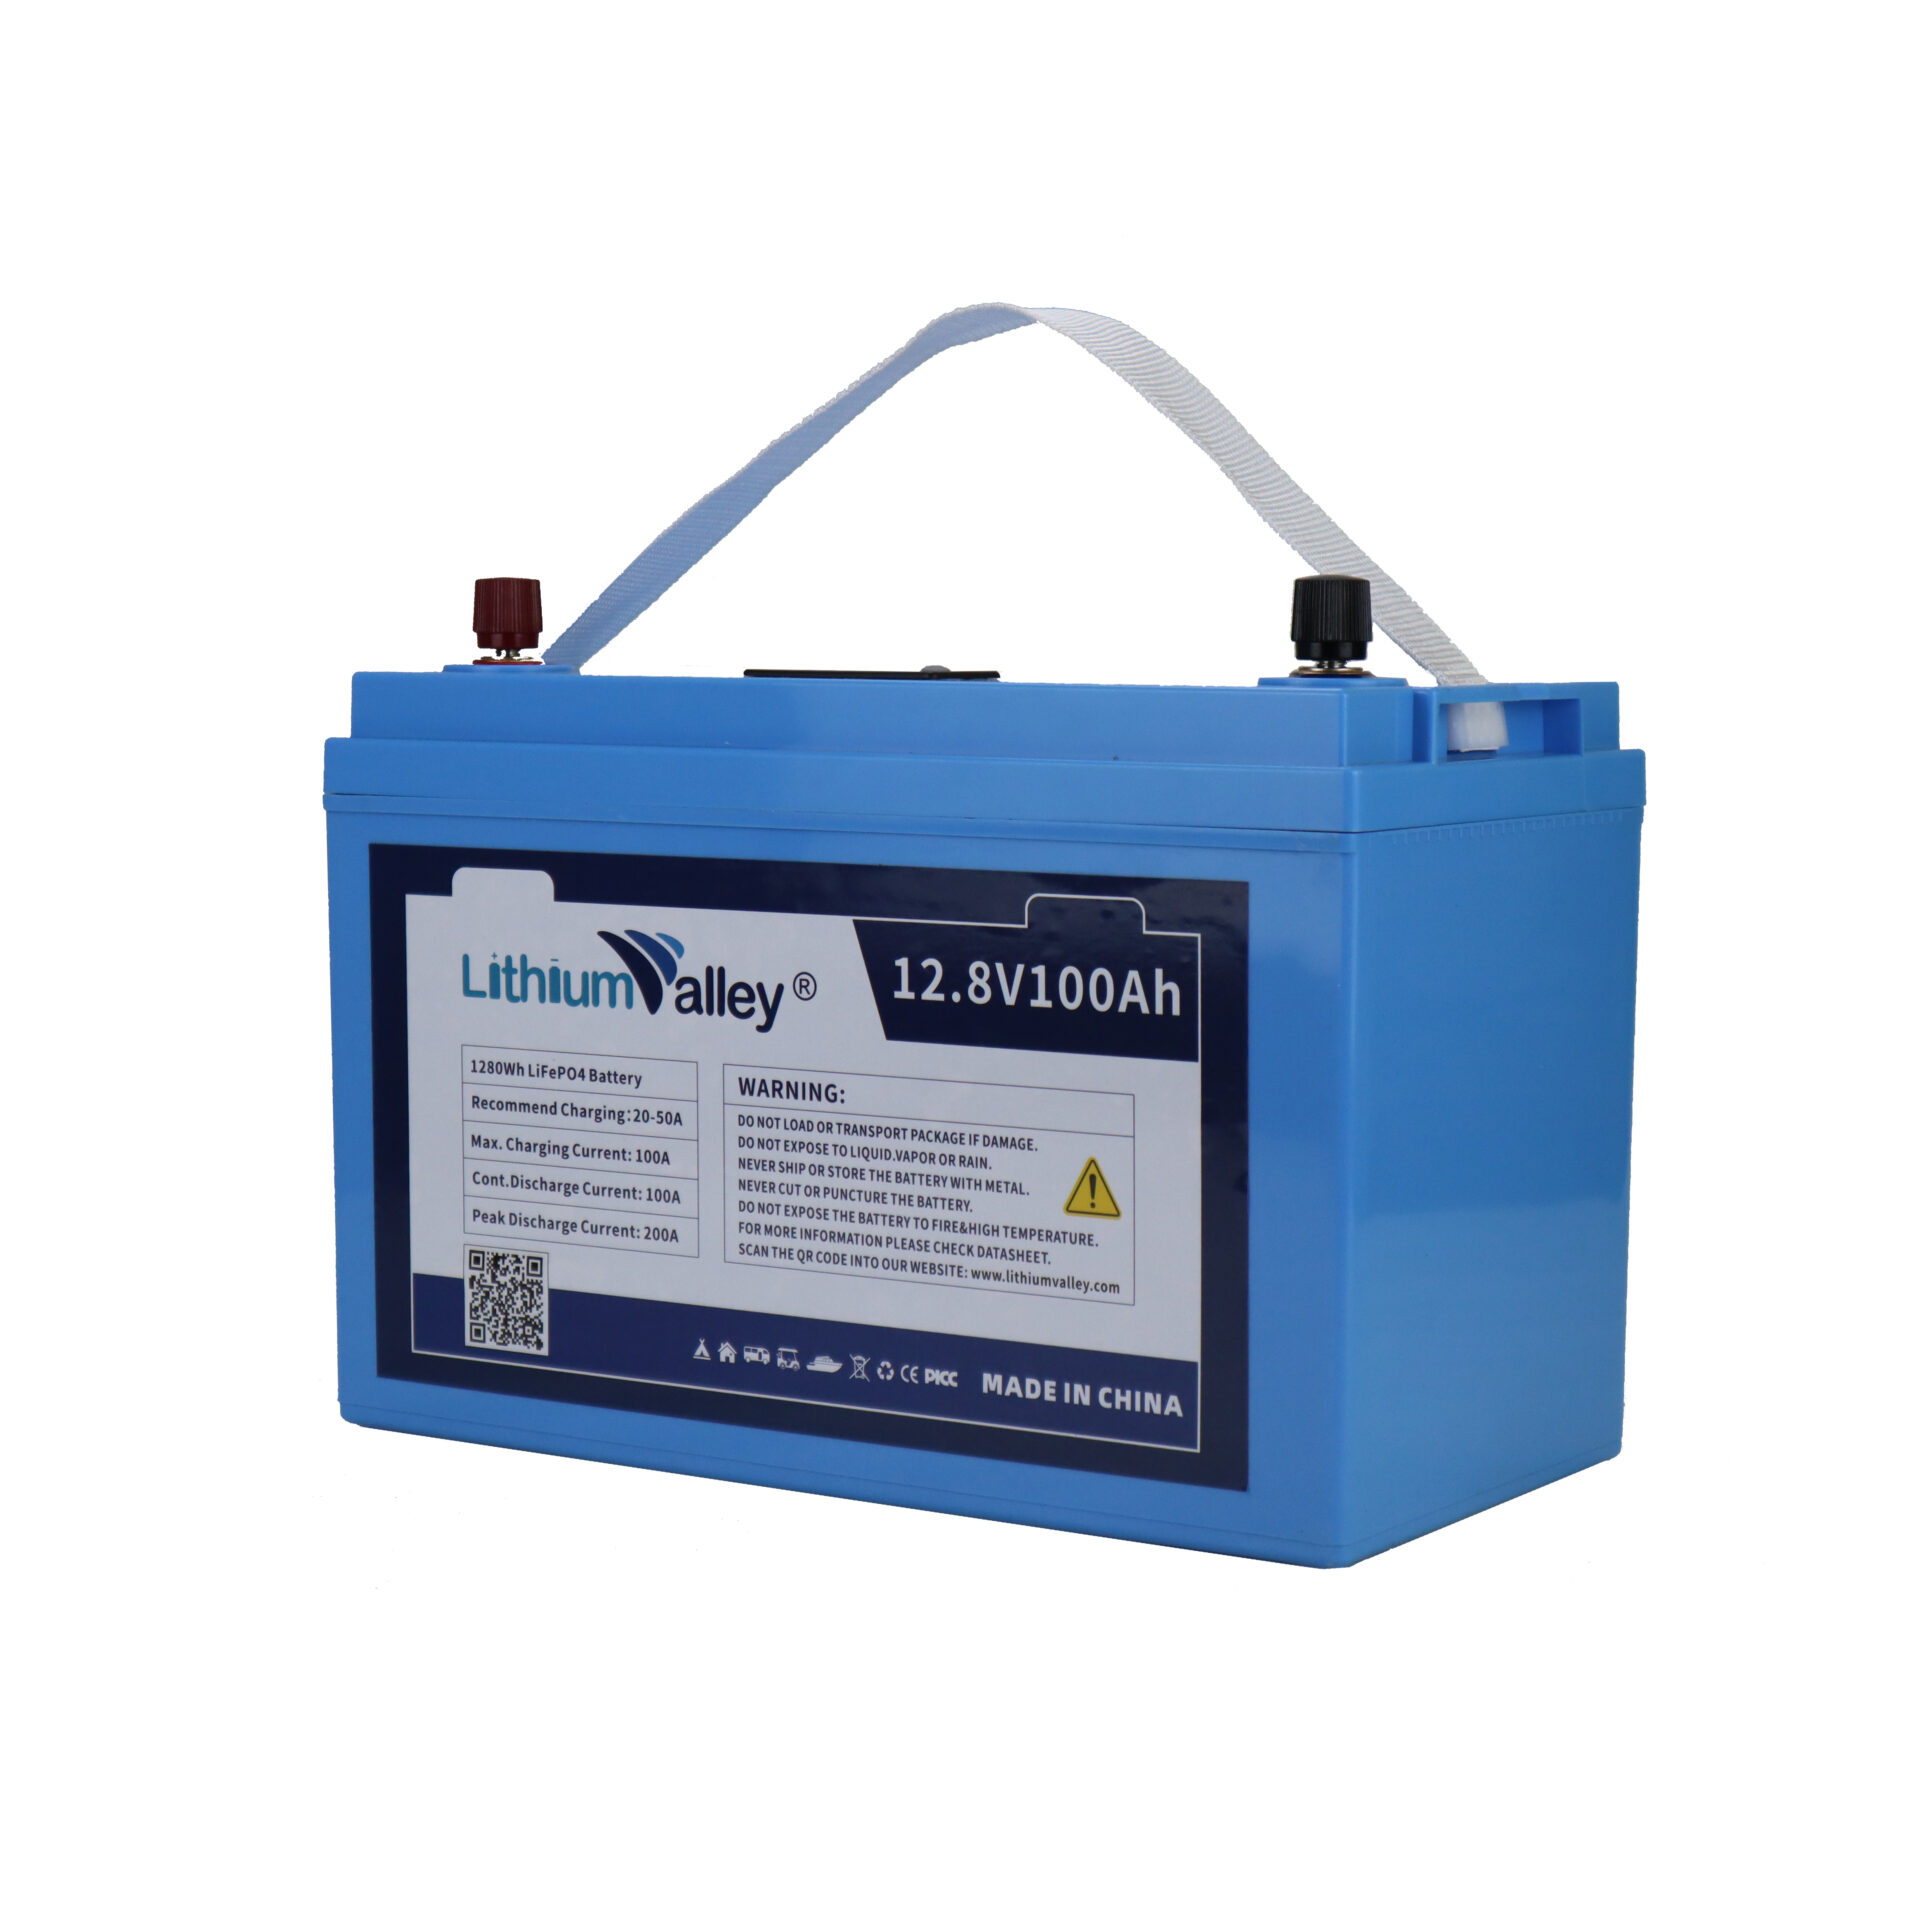 Lithium Valley 12V(12.8V) LiFePO4 50Ah battery